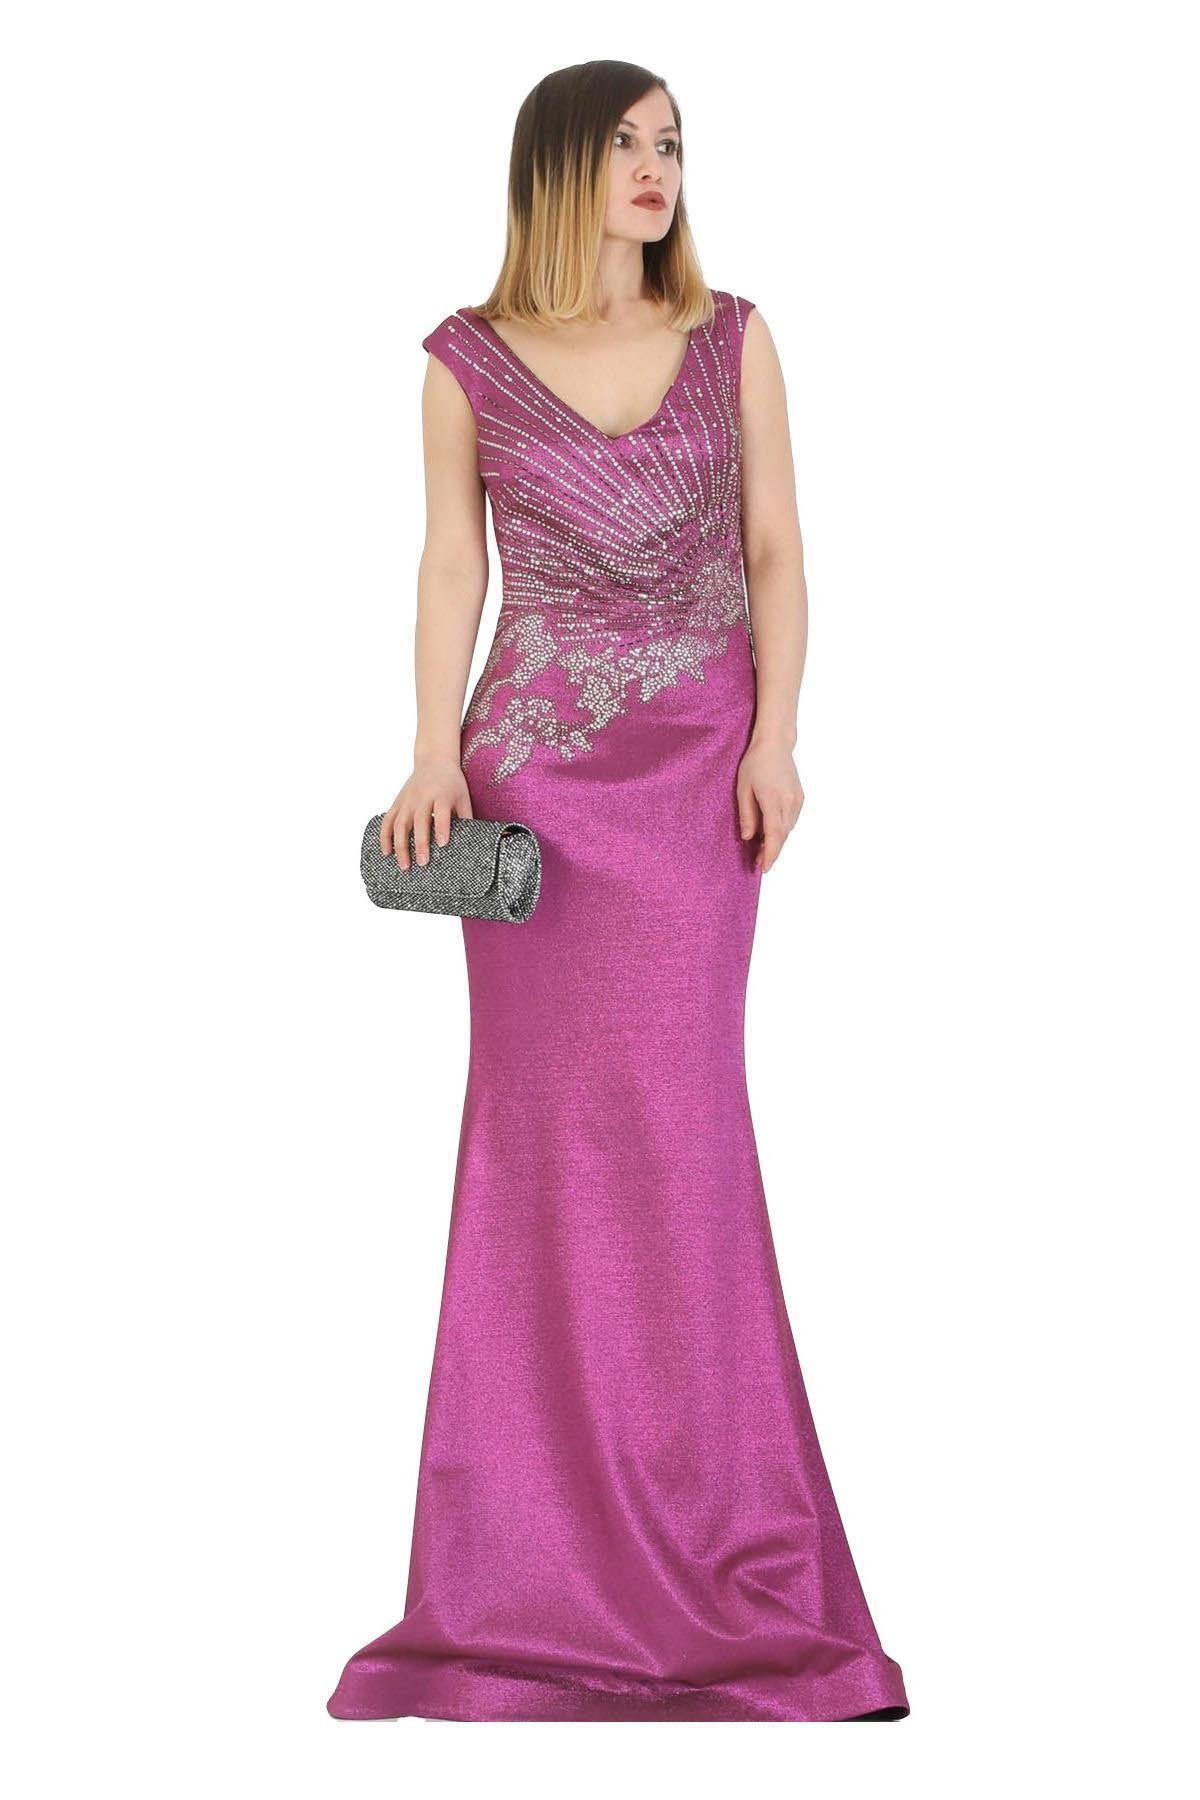 FİERTE Fierte Kadın Abiye Elbise Crd4550 V Yaka Kolsuz Taş Boncuk Işleme Parlak Kumaş Balık Volan Etek Pudr